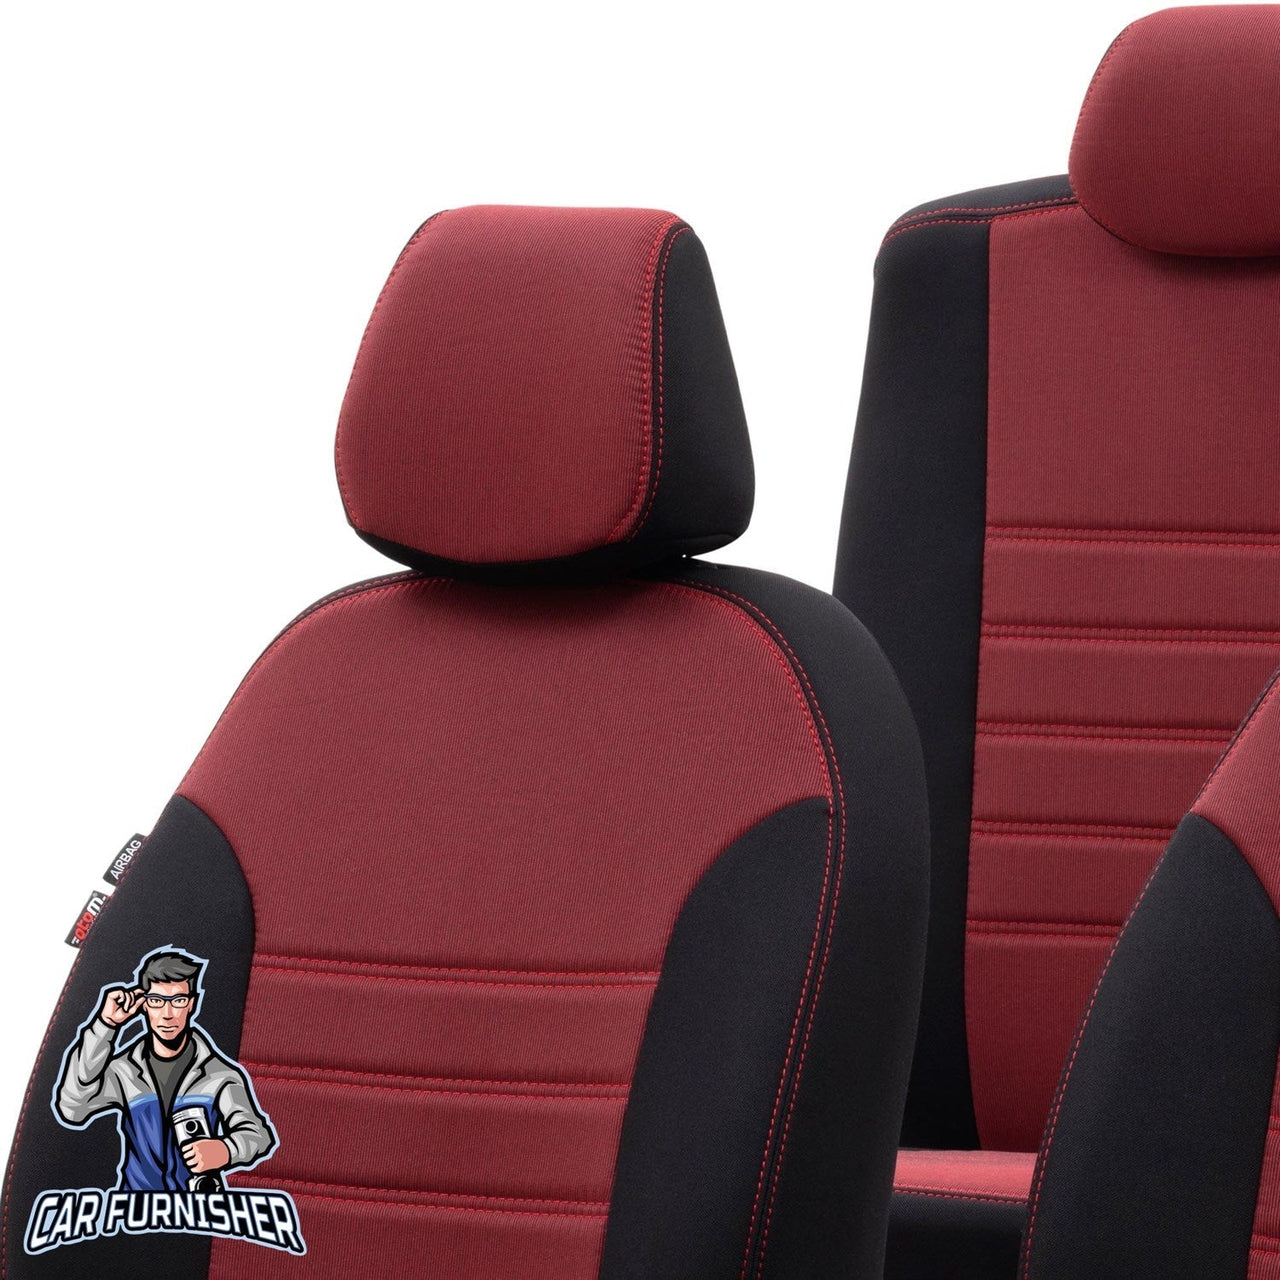 Bmw X3 Seat Cover Original Jacquard Design Red Jacquard Fabric